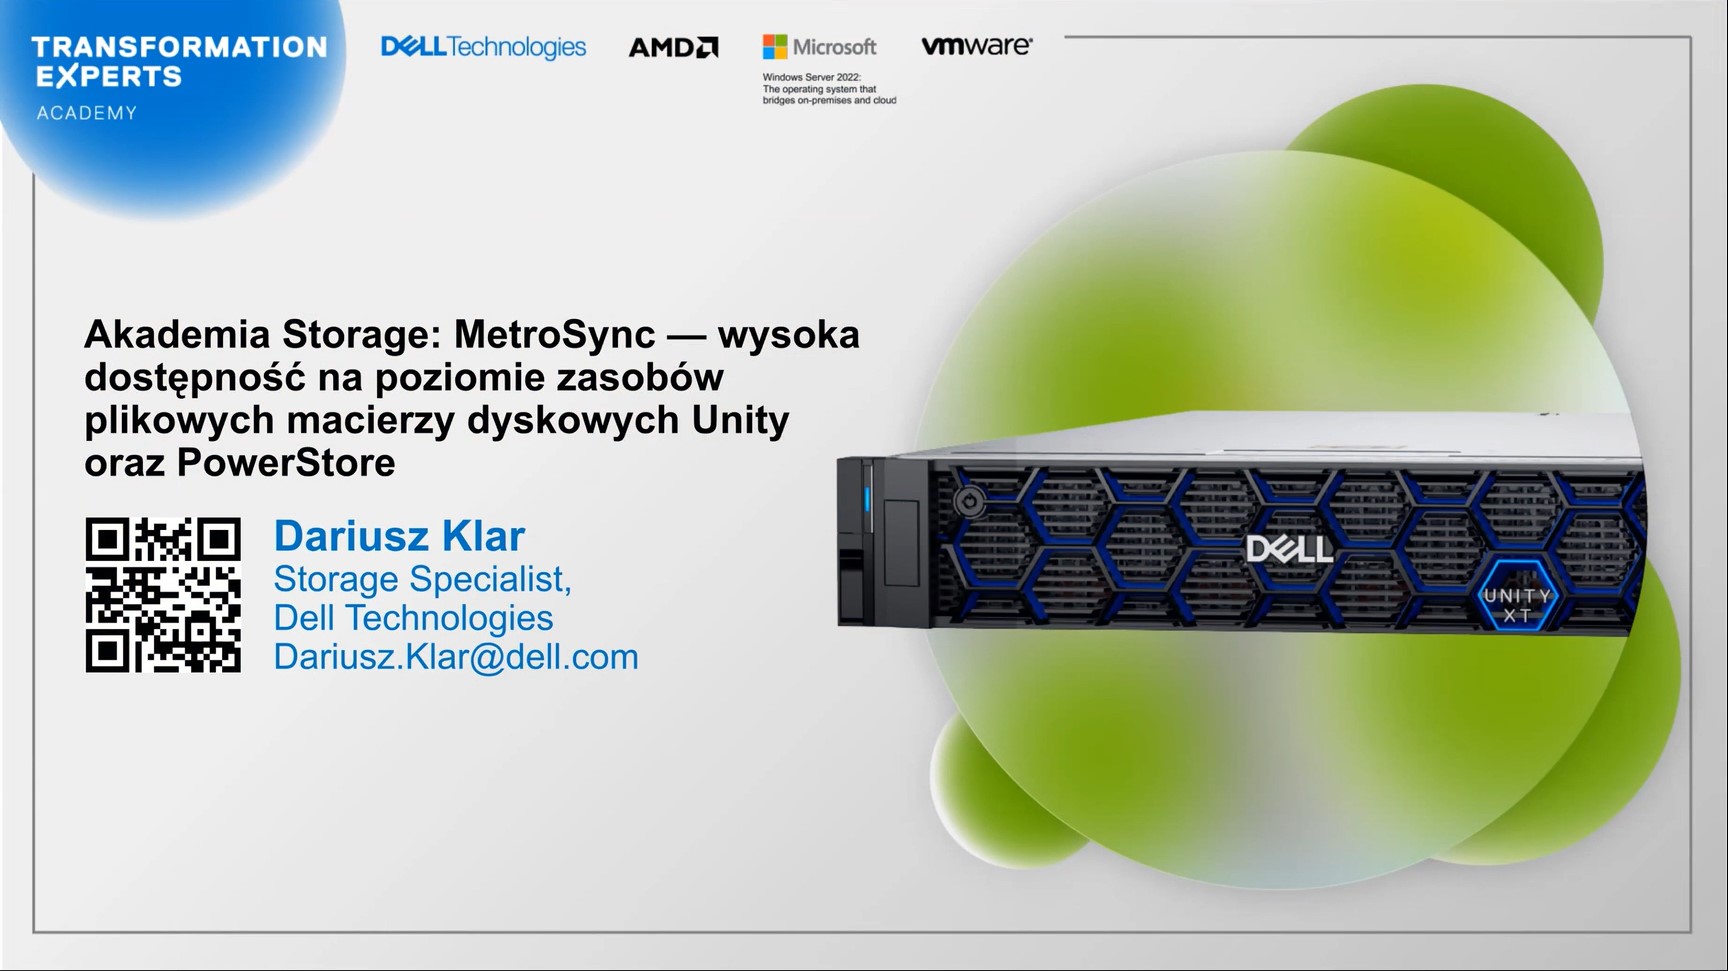 Akademia Storage: MetroSync — wysoka dostępność na poziomie zasobów plikowych macierzy dyskowych Unity oraz PowerStore.